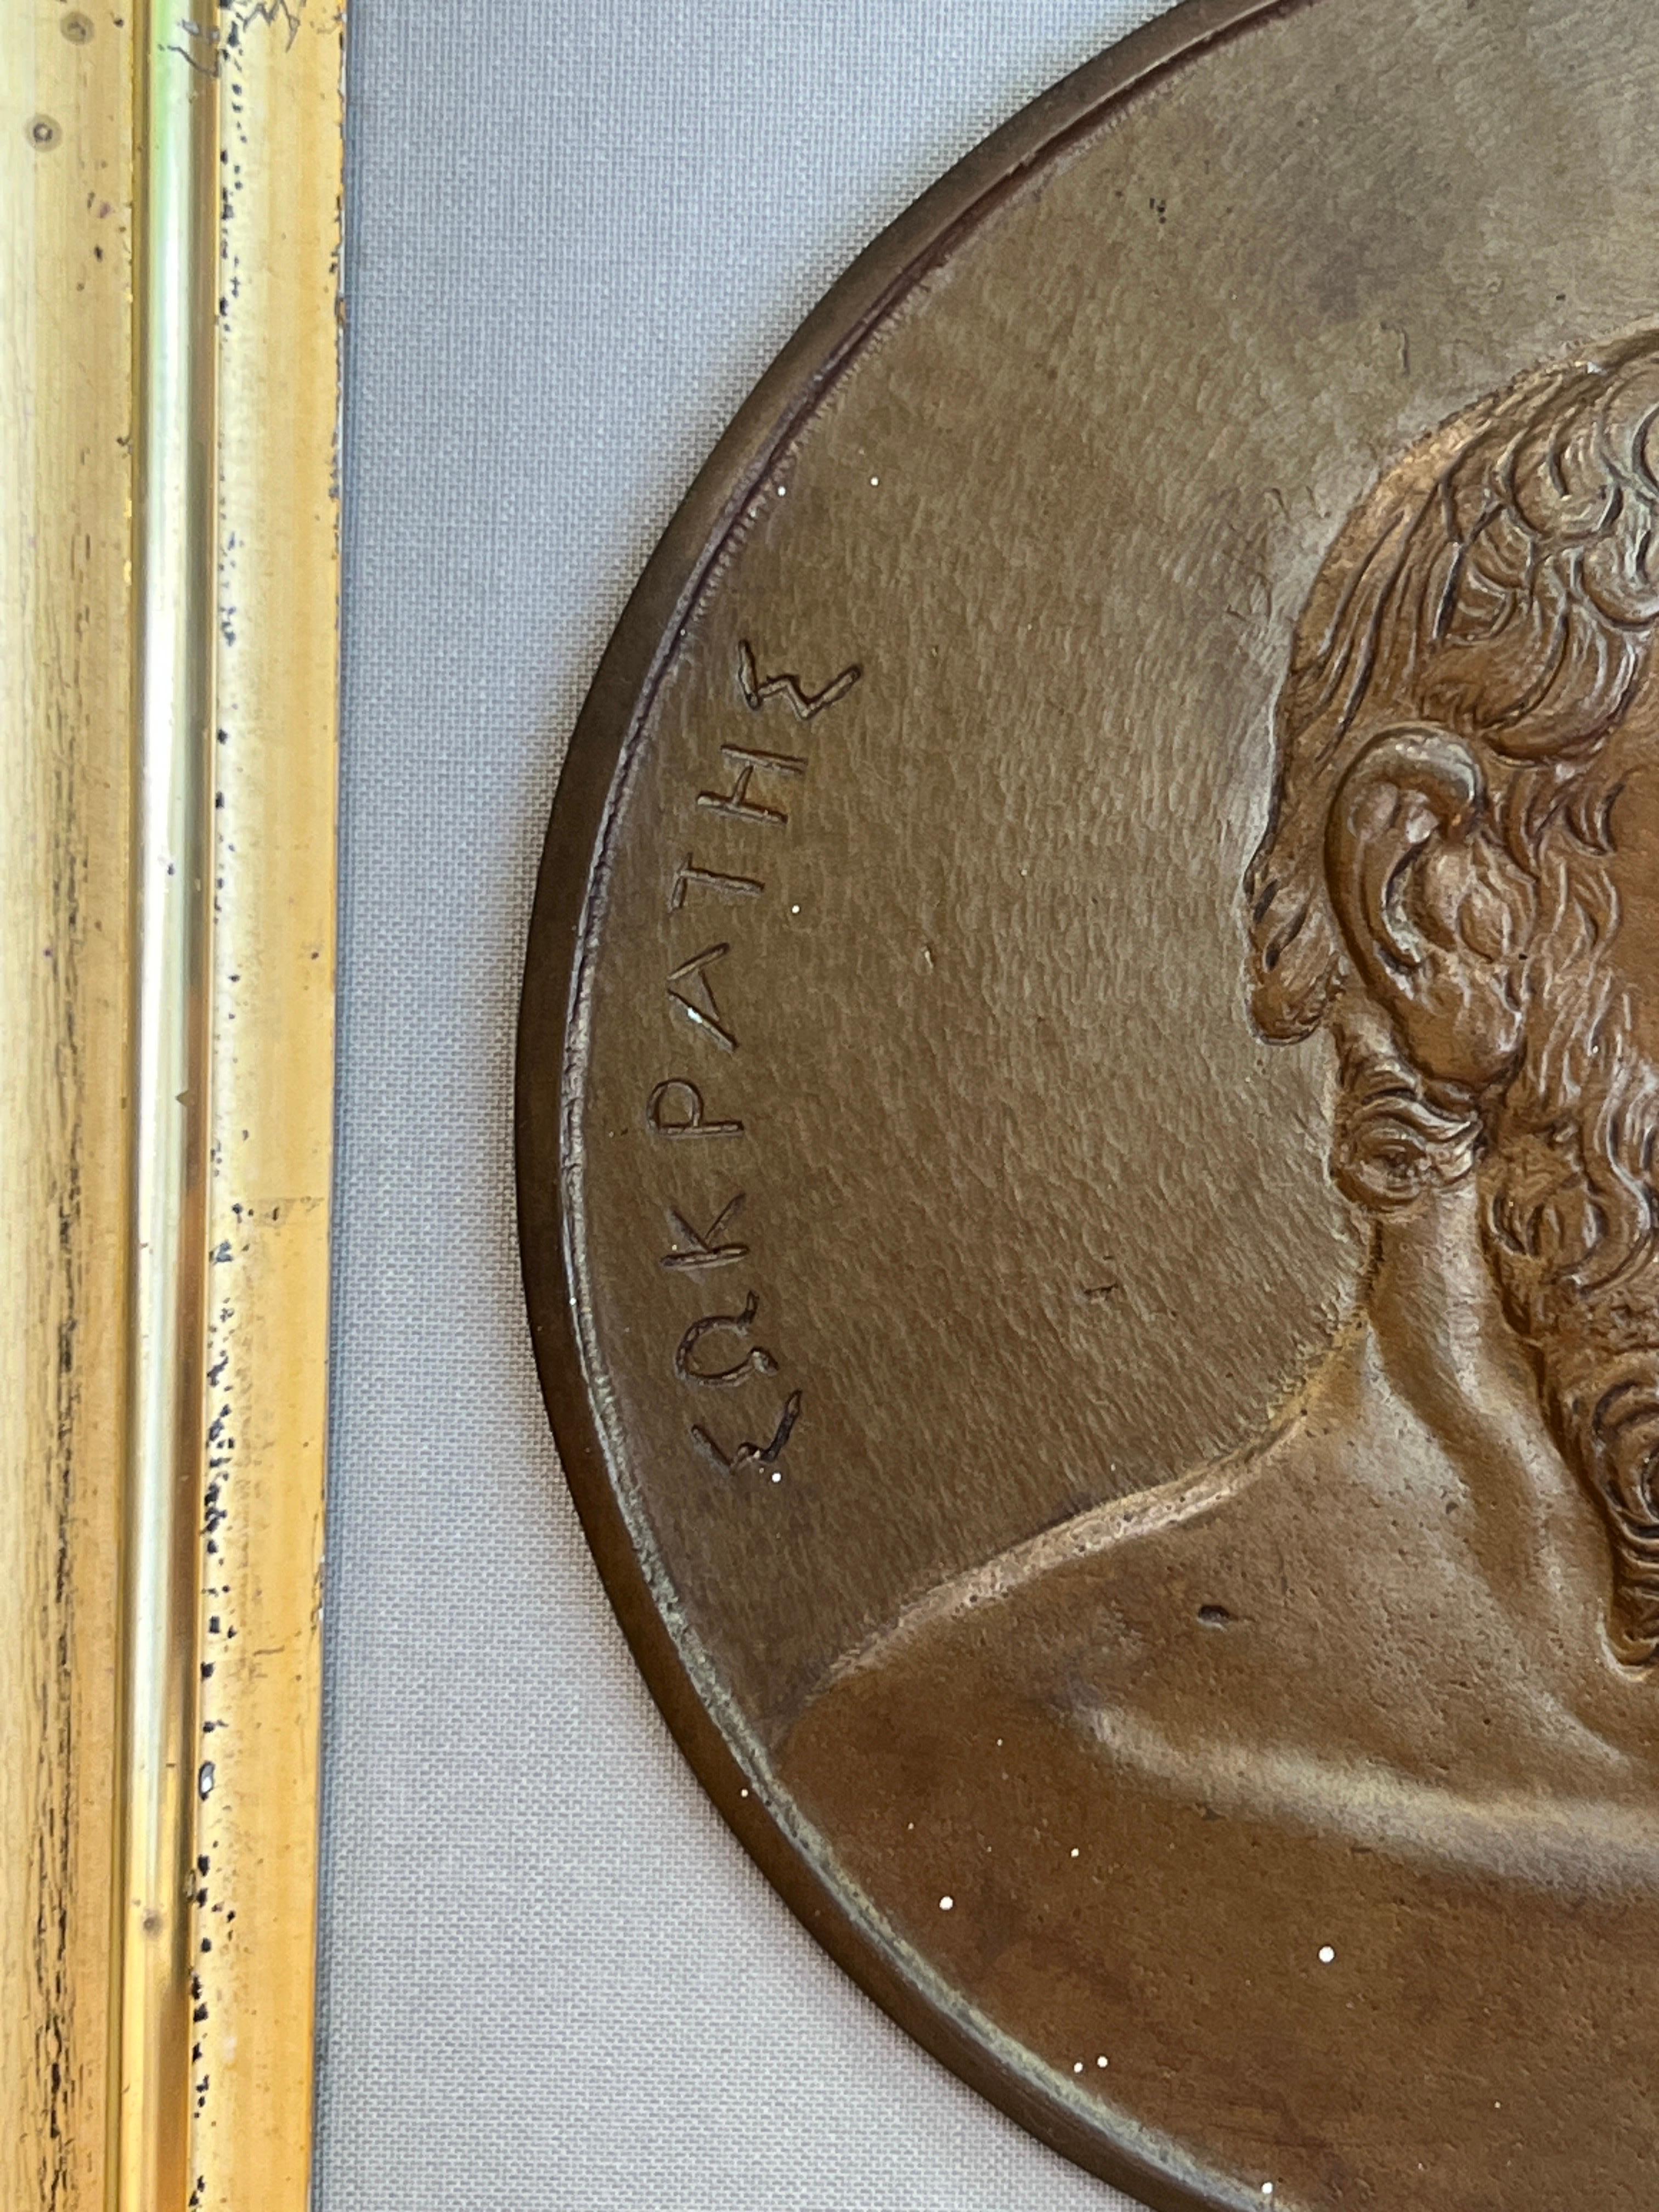 Italie, fin du XIXe siècle. 

Paire de plaques en bronze du Grand Tour représentant 
1) Ulisse Aldrovandi (italien, 1522-1602) était un naturaliste italien, à l'origine du jardin botanique de Bologne, l'un des premiers d'Europe. Carl Linné et le